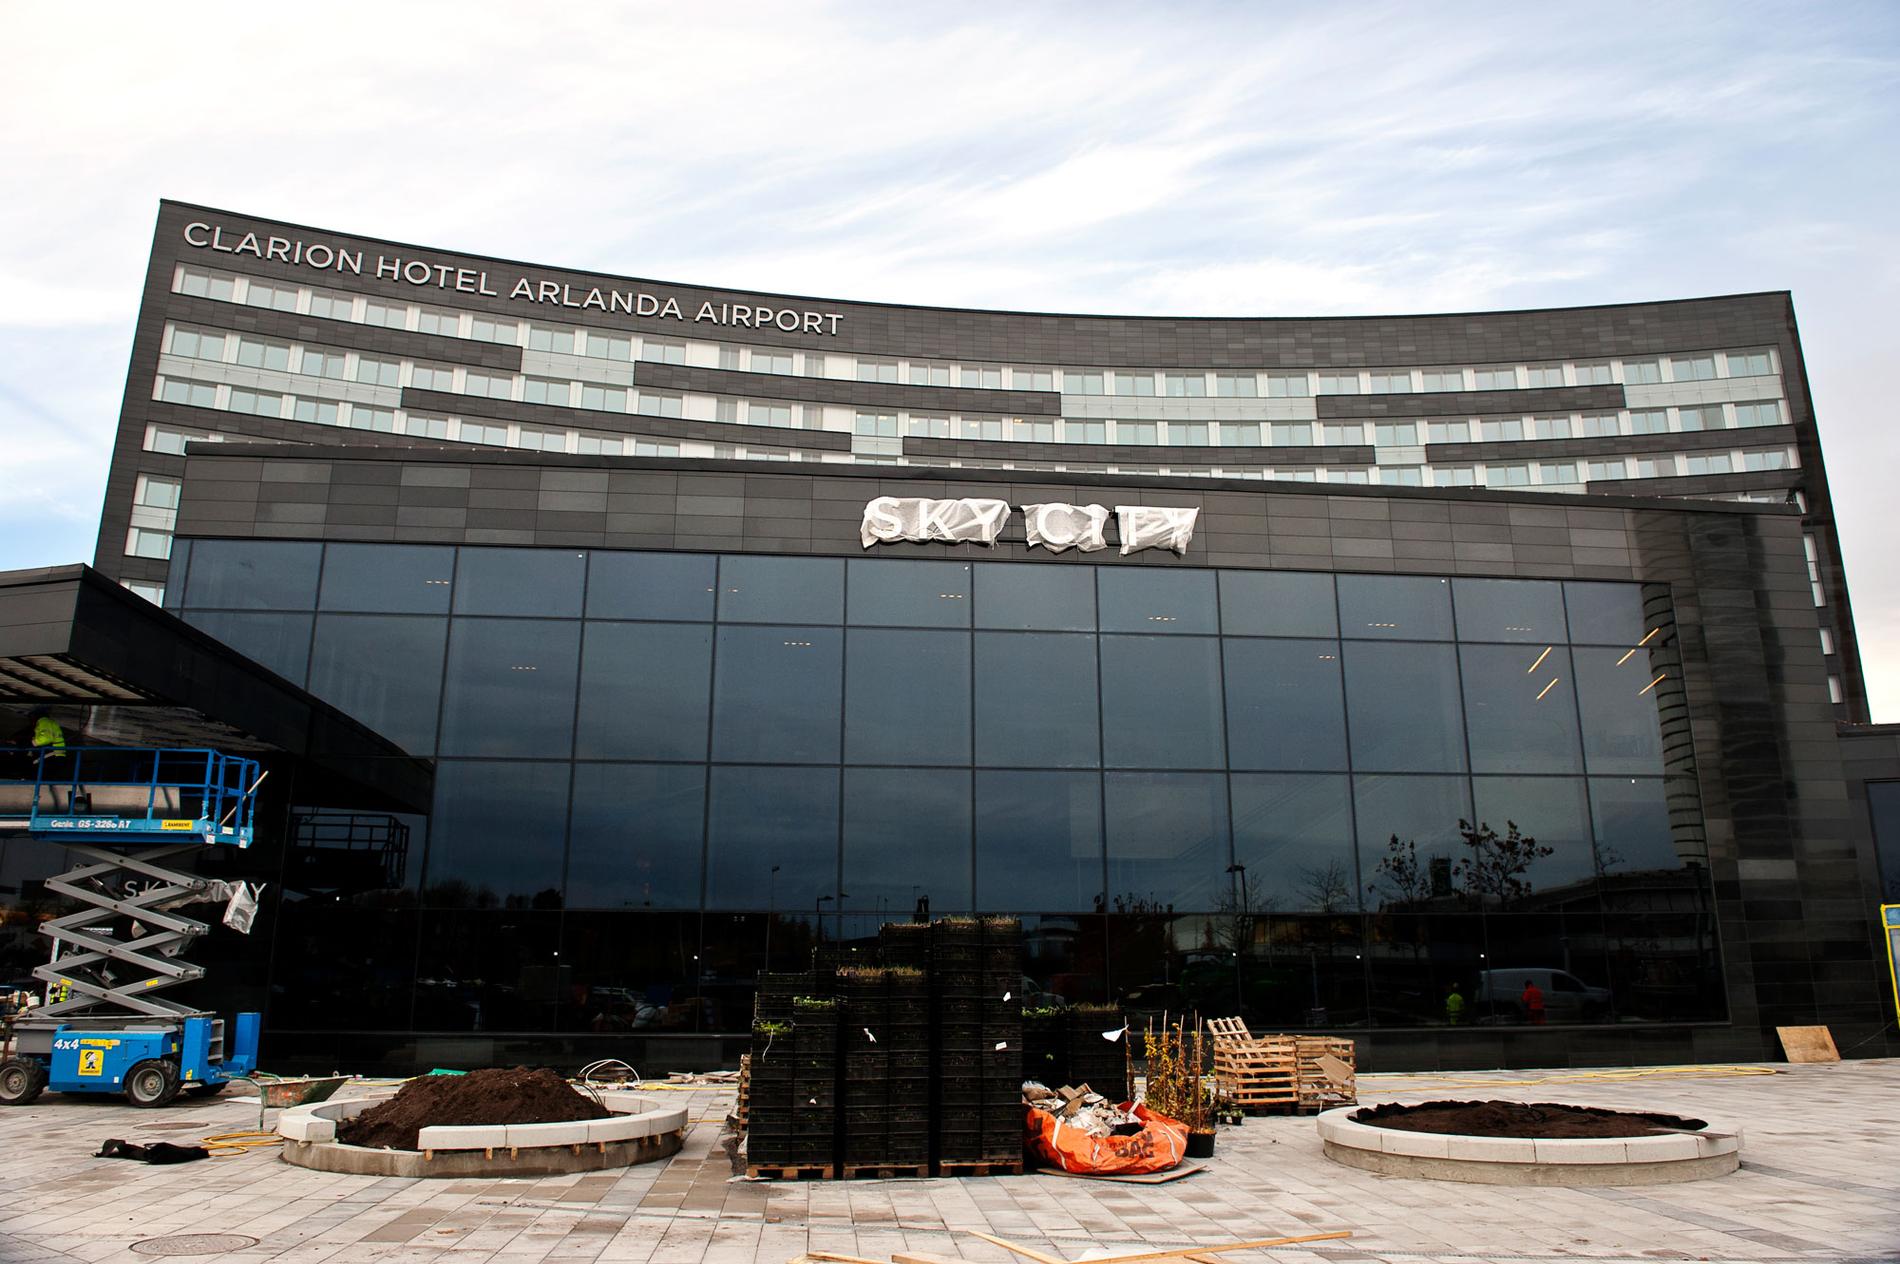 Clarion Hotel Arlanda Airport öppnar 1 november 2012. I glasbyggnaden i förgrunden finns bland annat en stor pool.